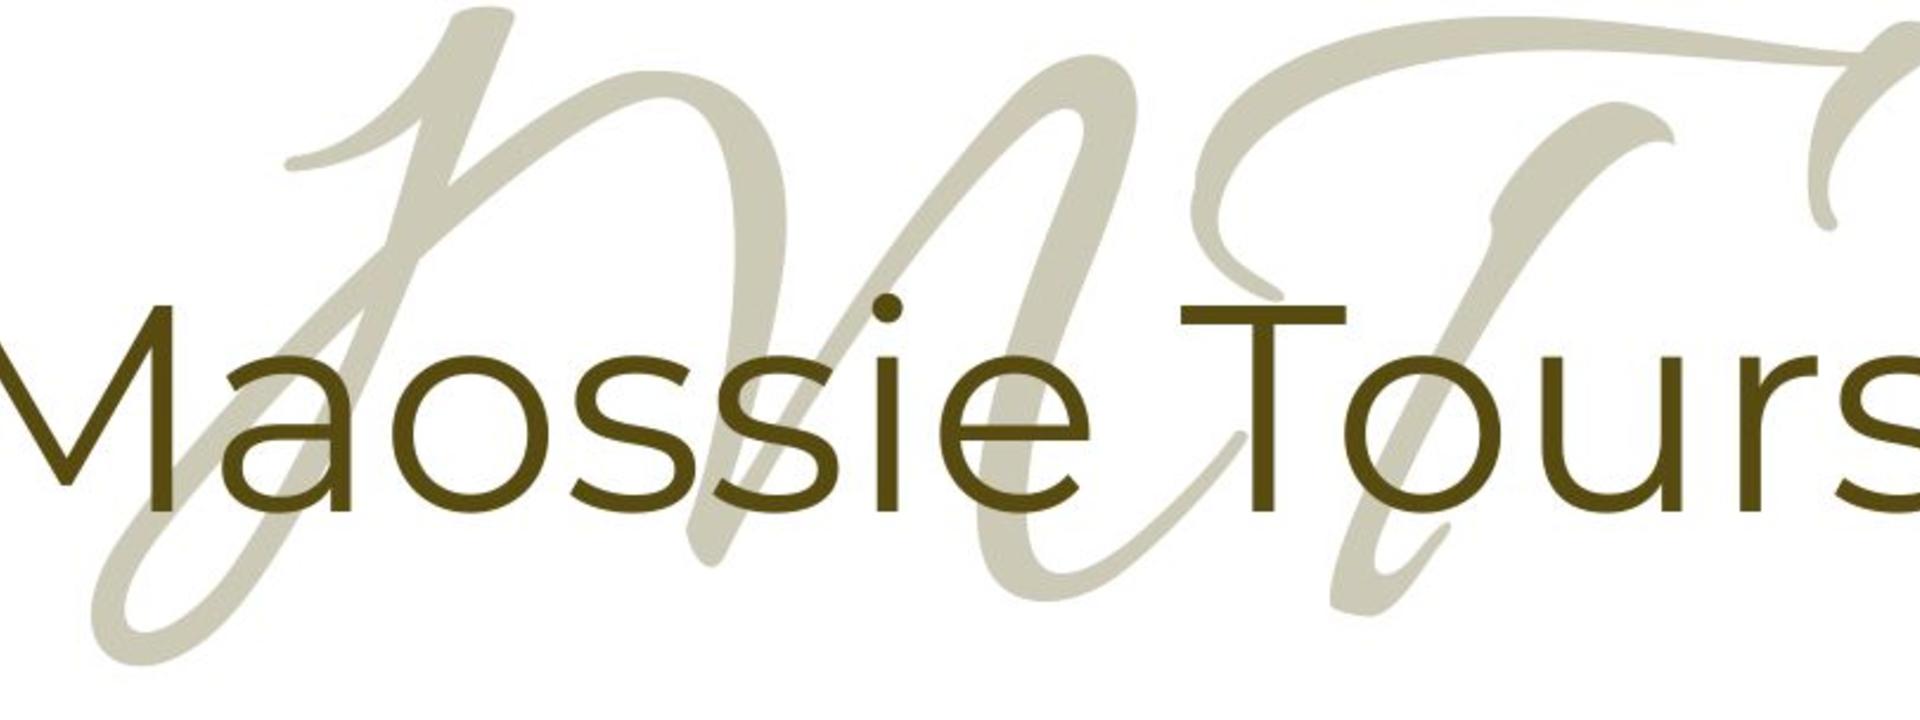 maossie-logo-v01.jpg